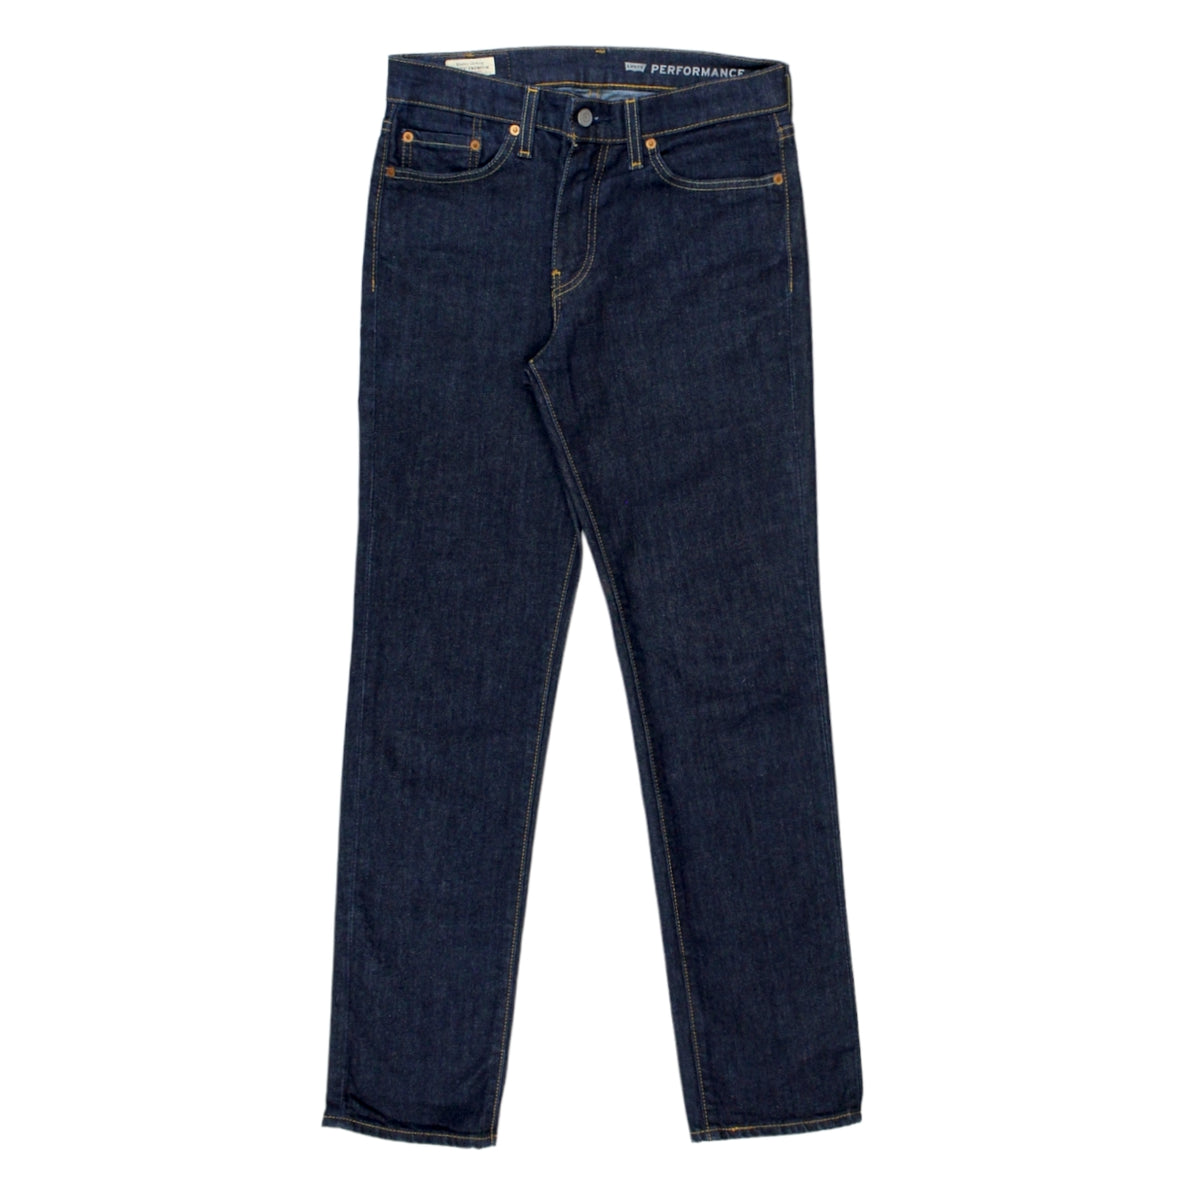 Levis Premium Indigo Denim Jeans